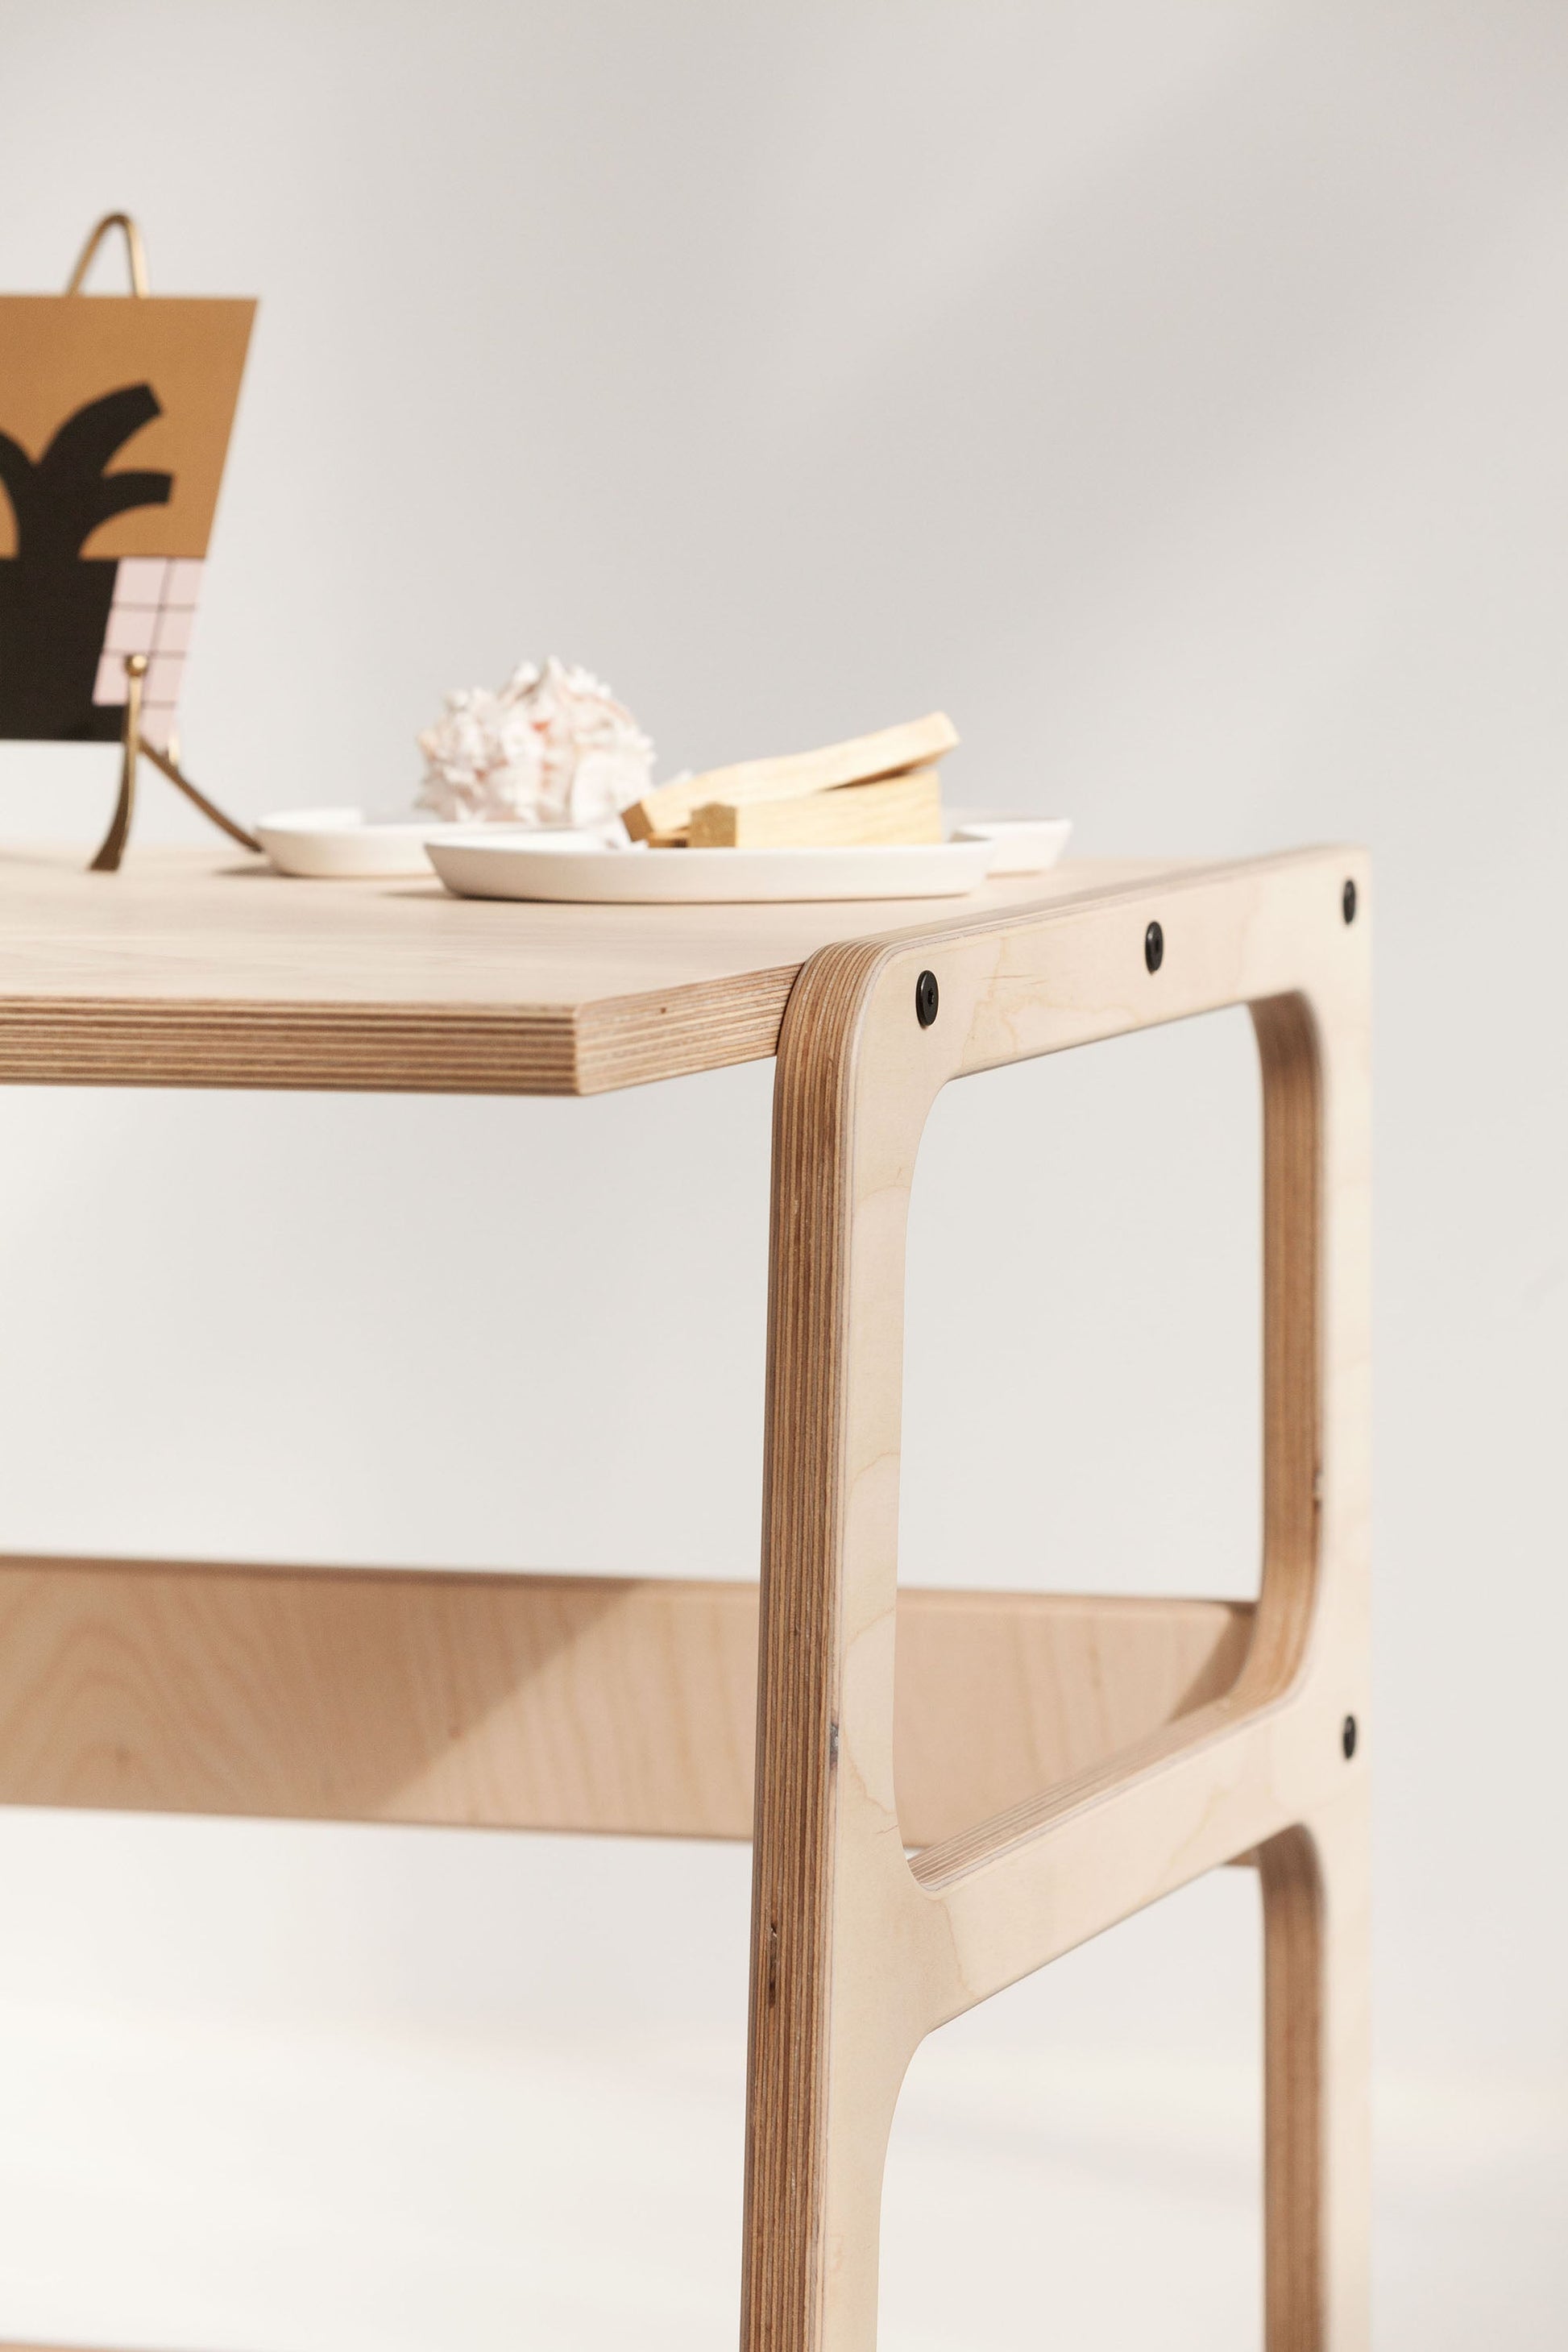 detail-of-wooden-minimalist-desk-handmadedetail-of-wooden-minimalist-desk-handmade